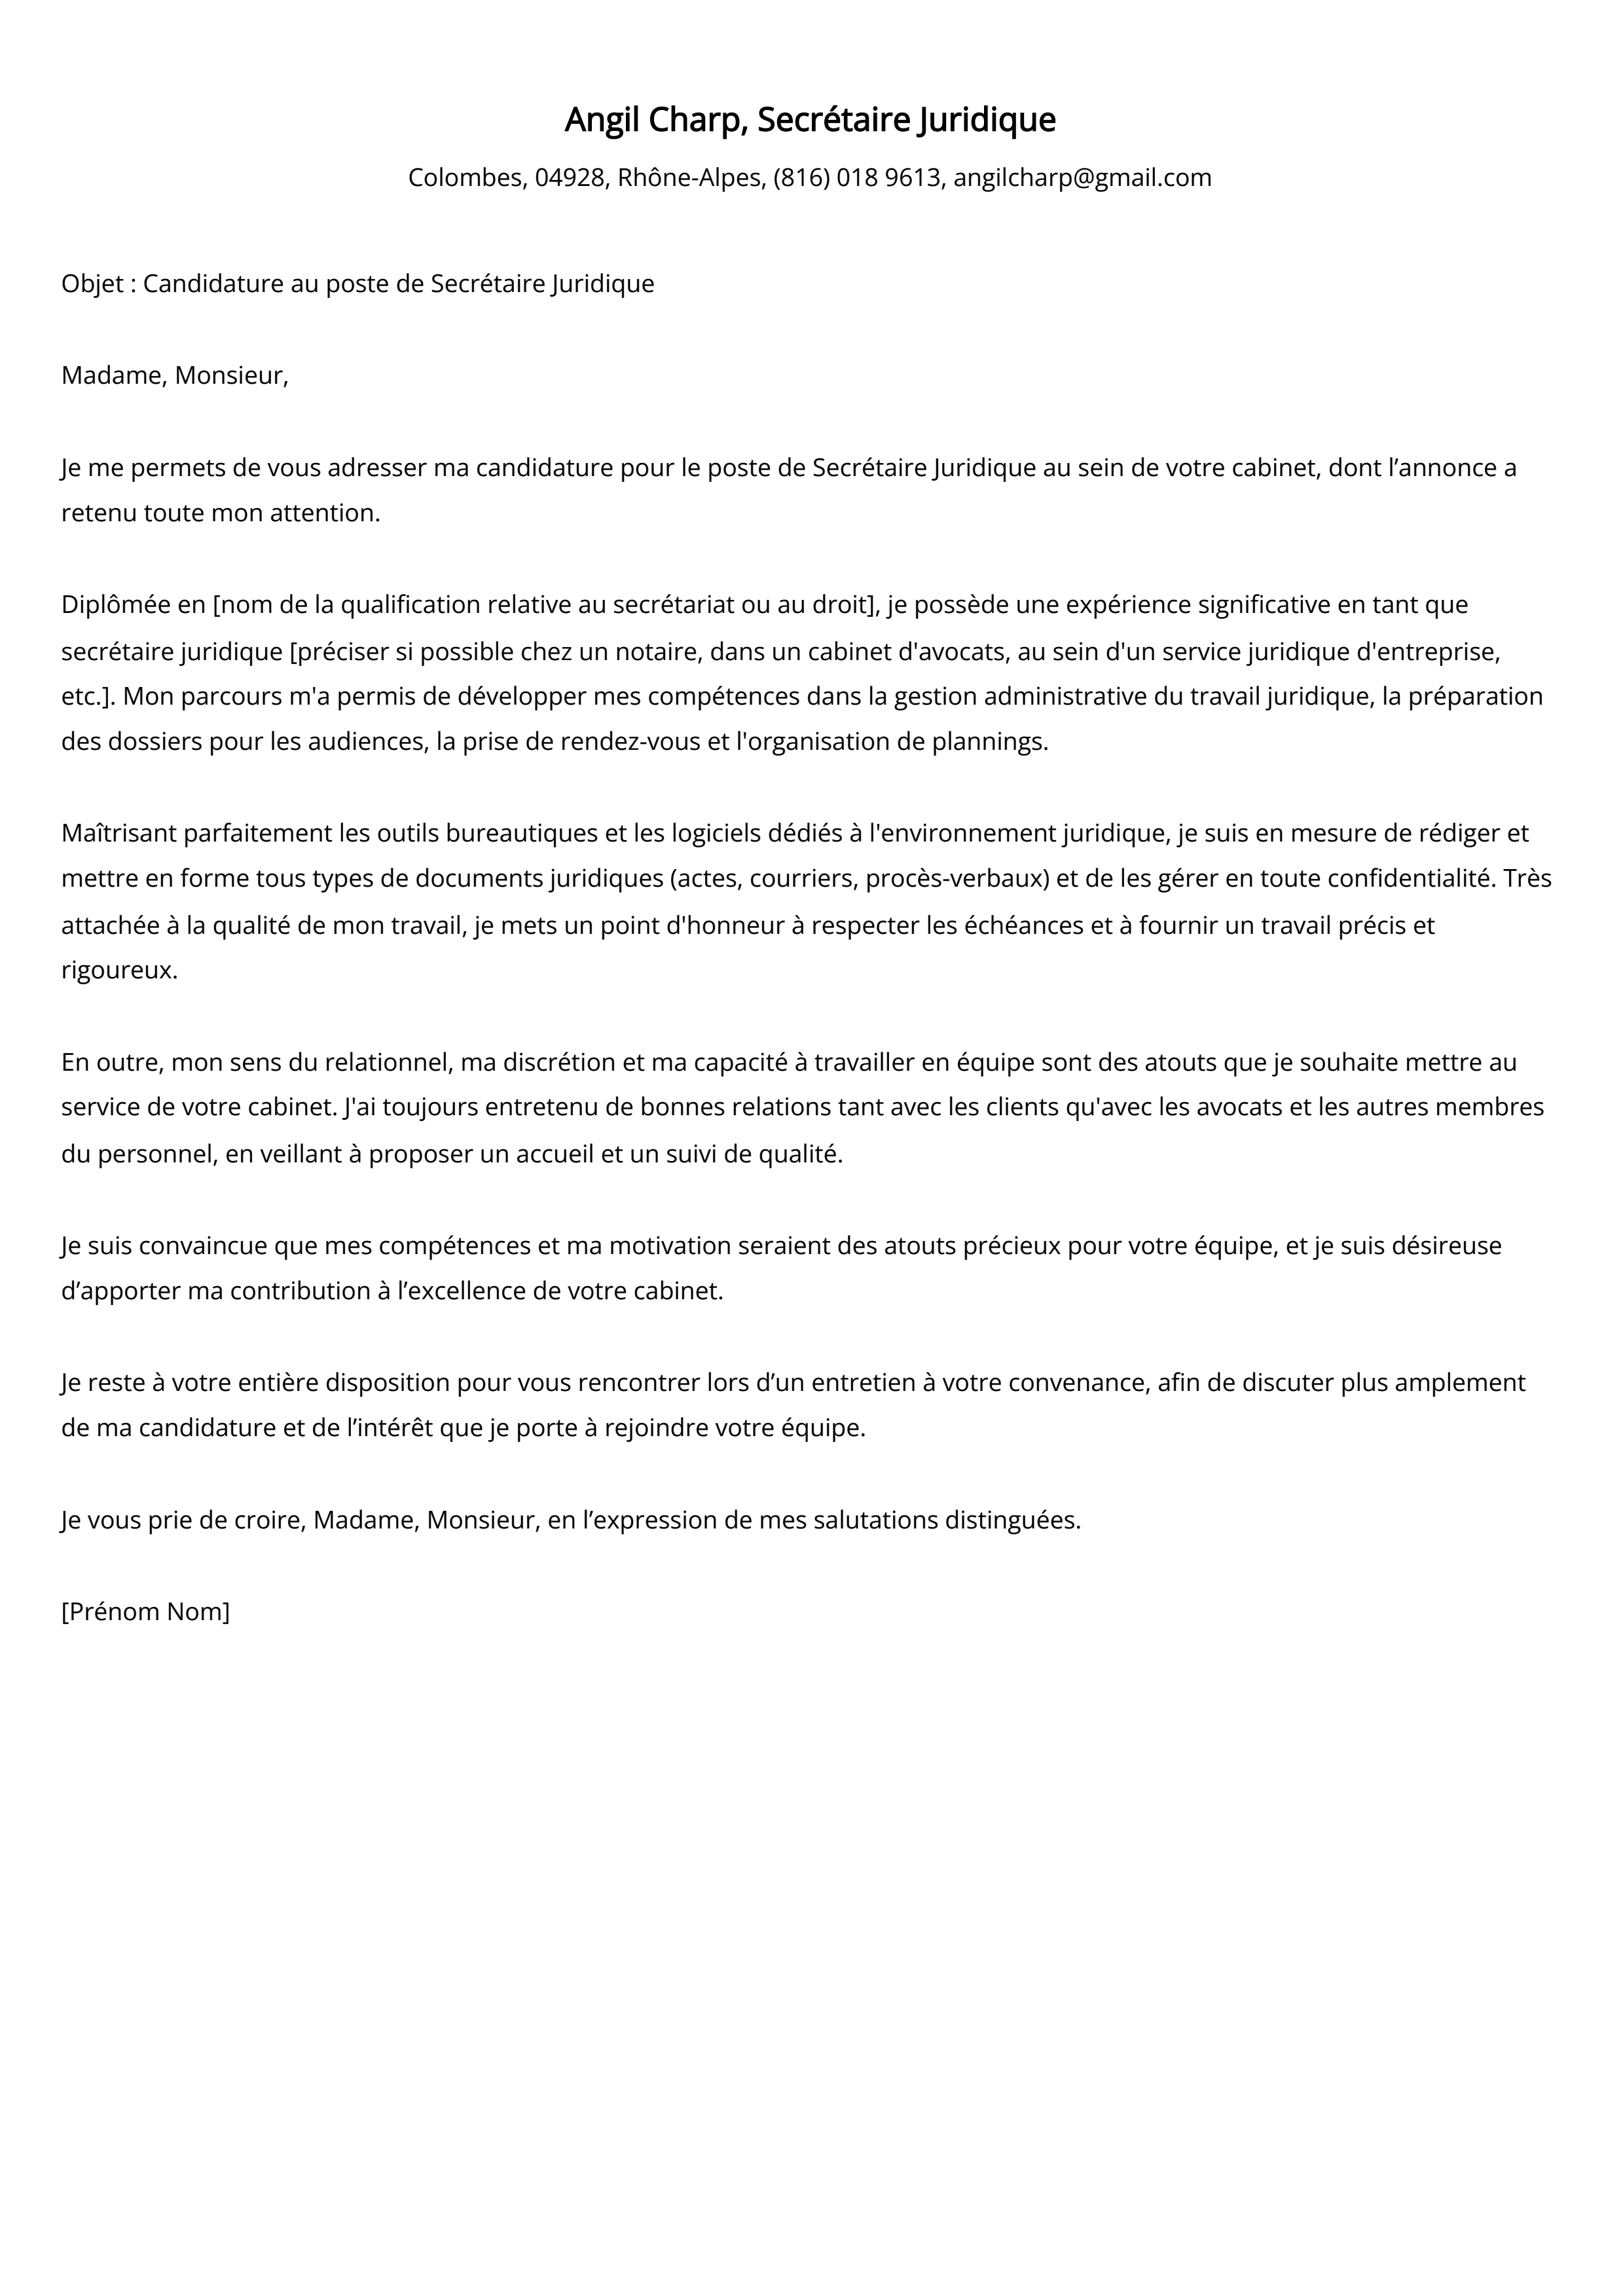 Secrétaire Juridique Cover Letter Example